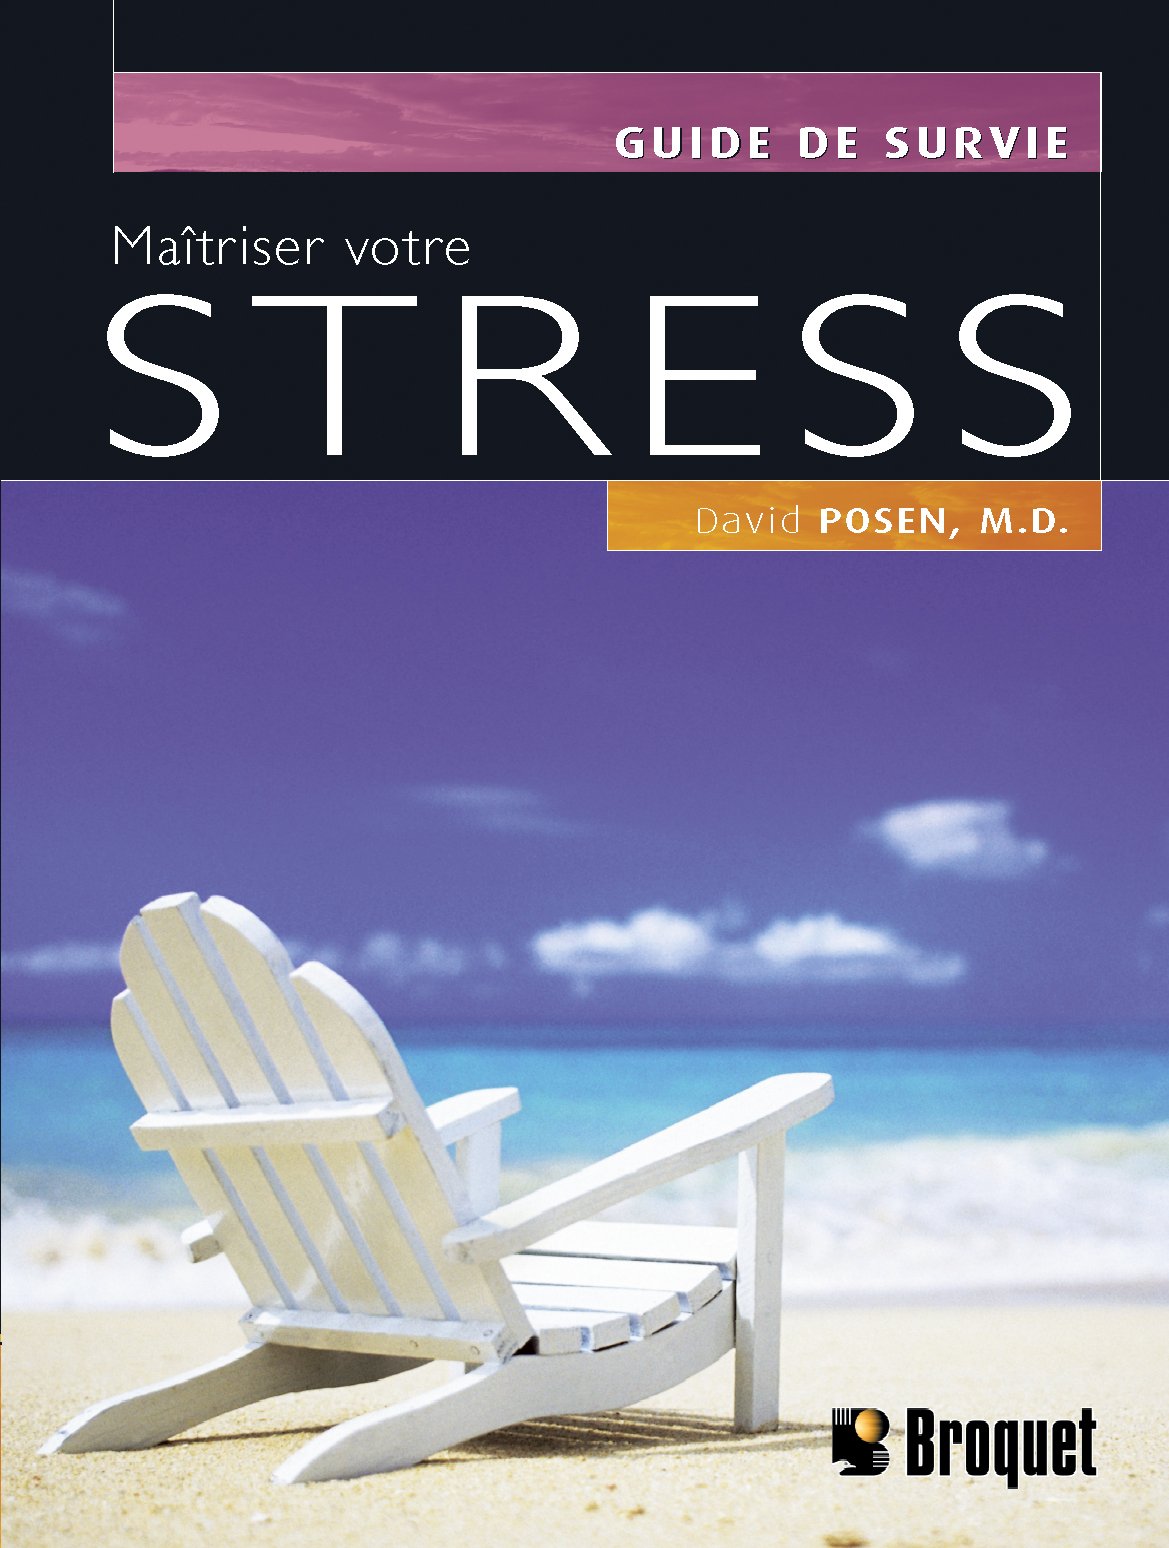 Guide de survie : Maîtriser votre stress - David Posen, M.D.